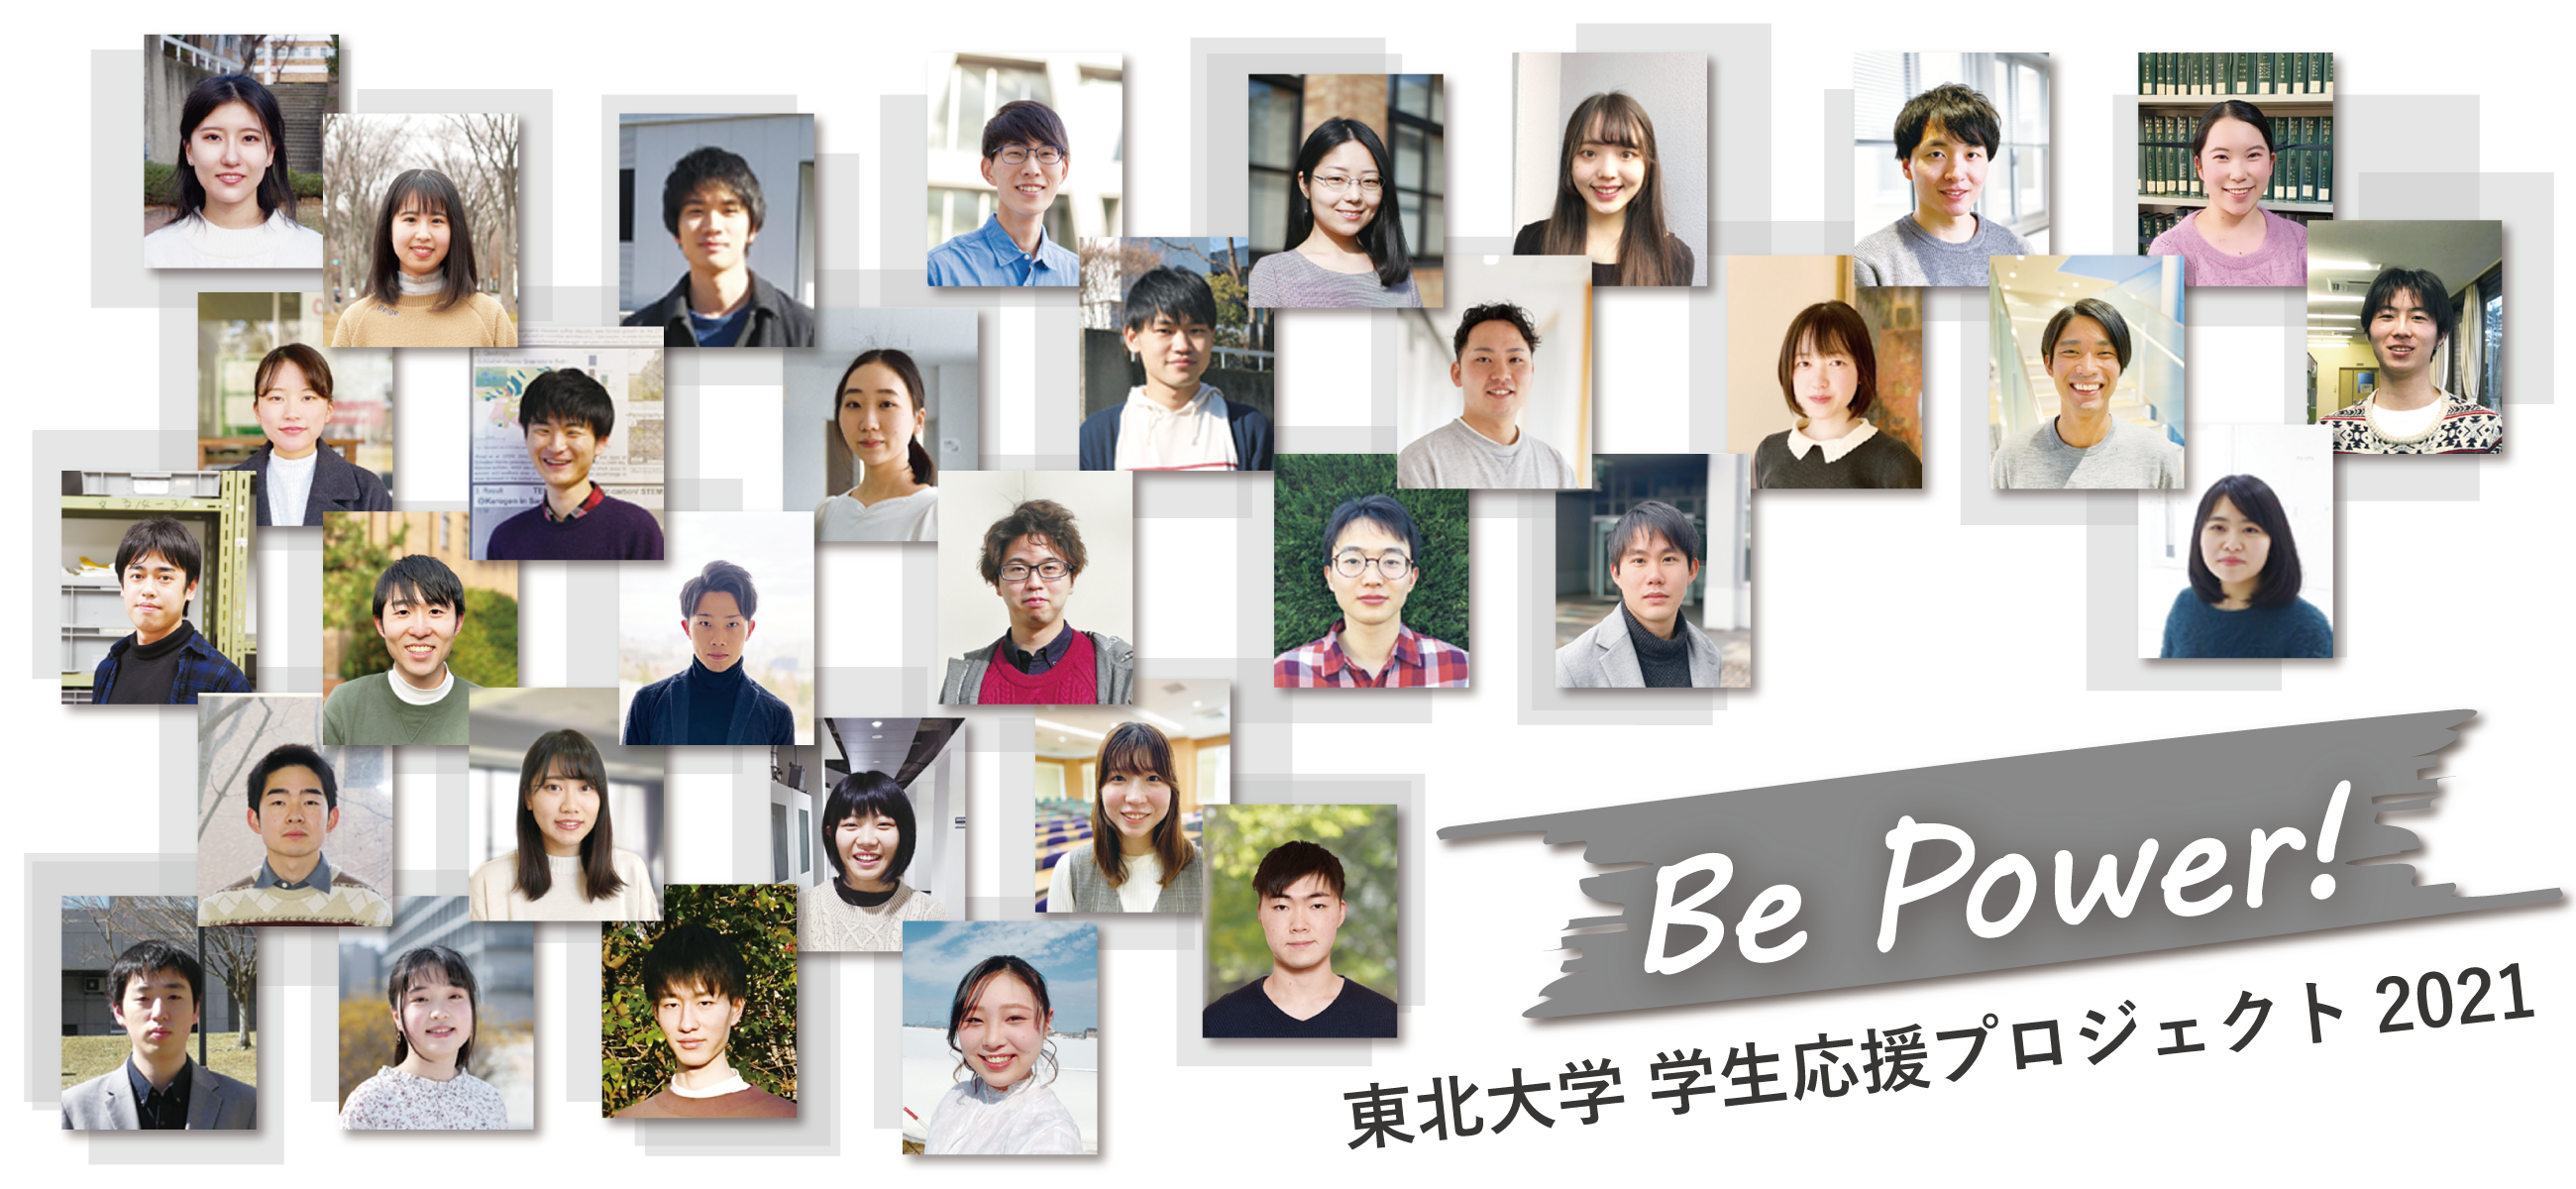 東北大学学生応援プロジェクト“Be Power!”